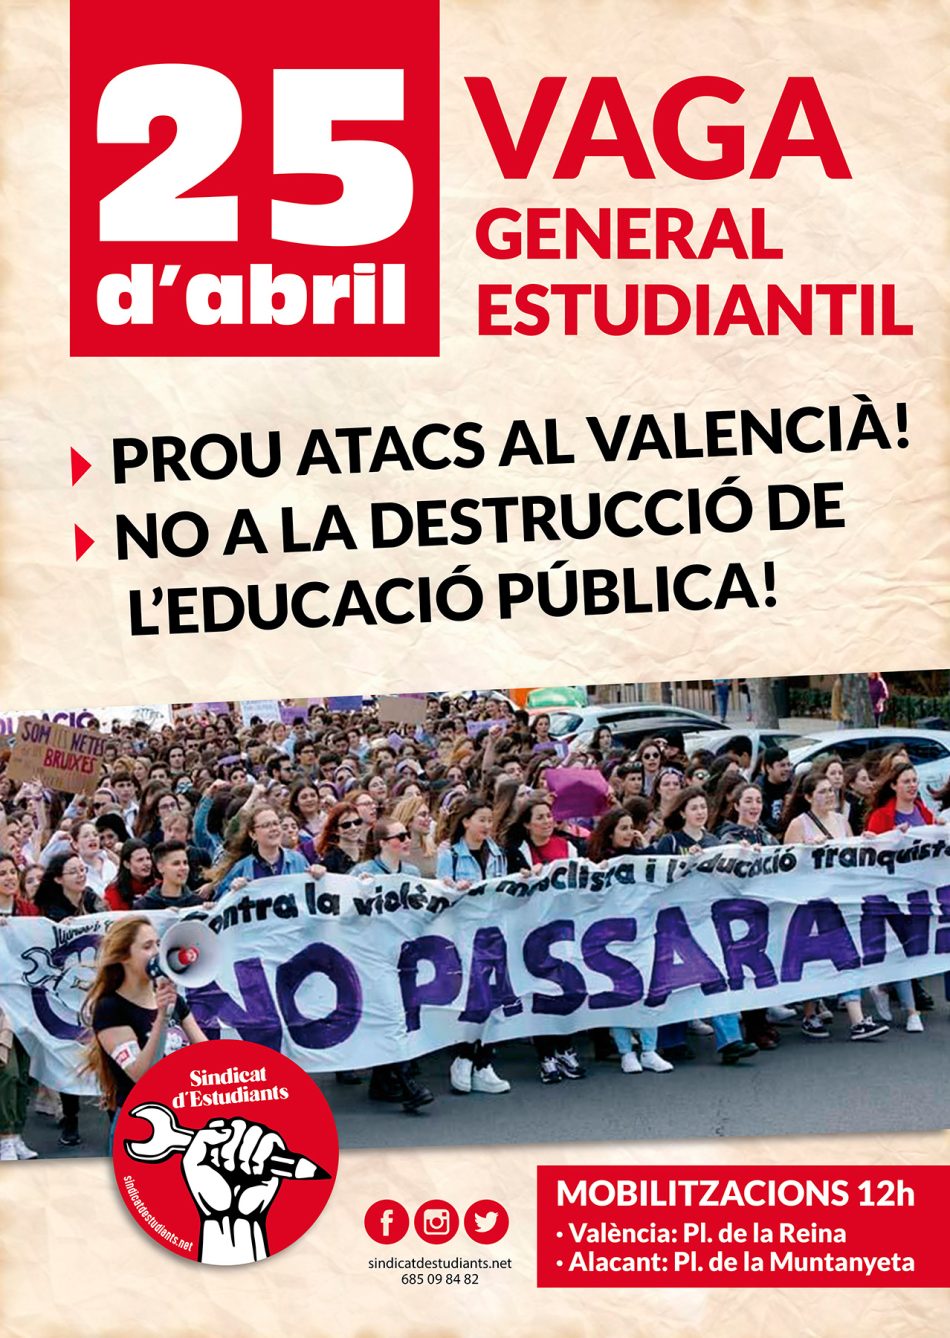 Convocan movilizaciones y huelga estudiantil el 25 de abril ante los nuevos ataques a la escuela pública, al valenciano y contra la memoria histórica por parte del Govern de PP y Vox